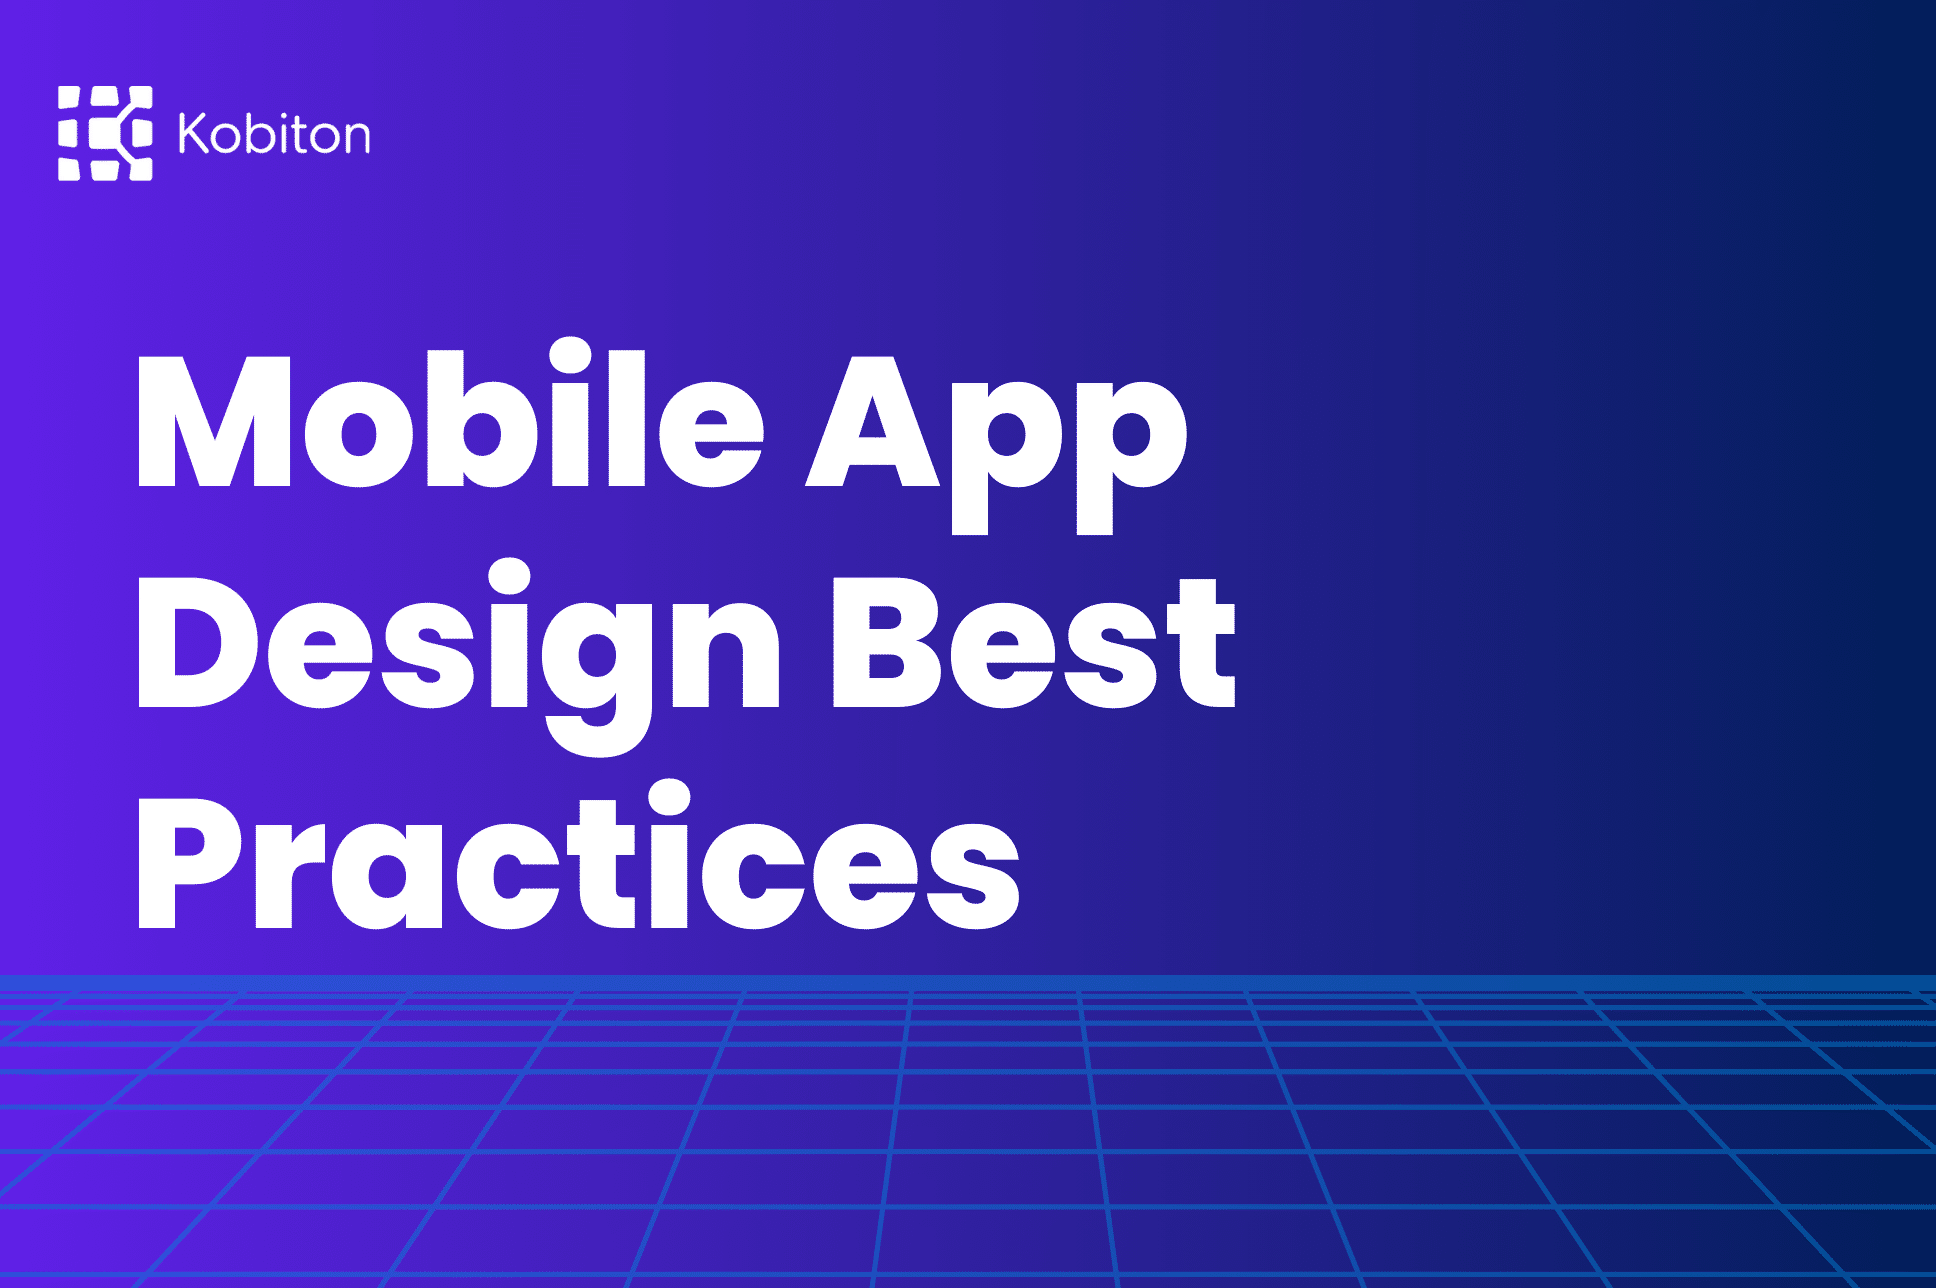 Mobile App Design Blog Image